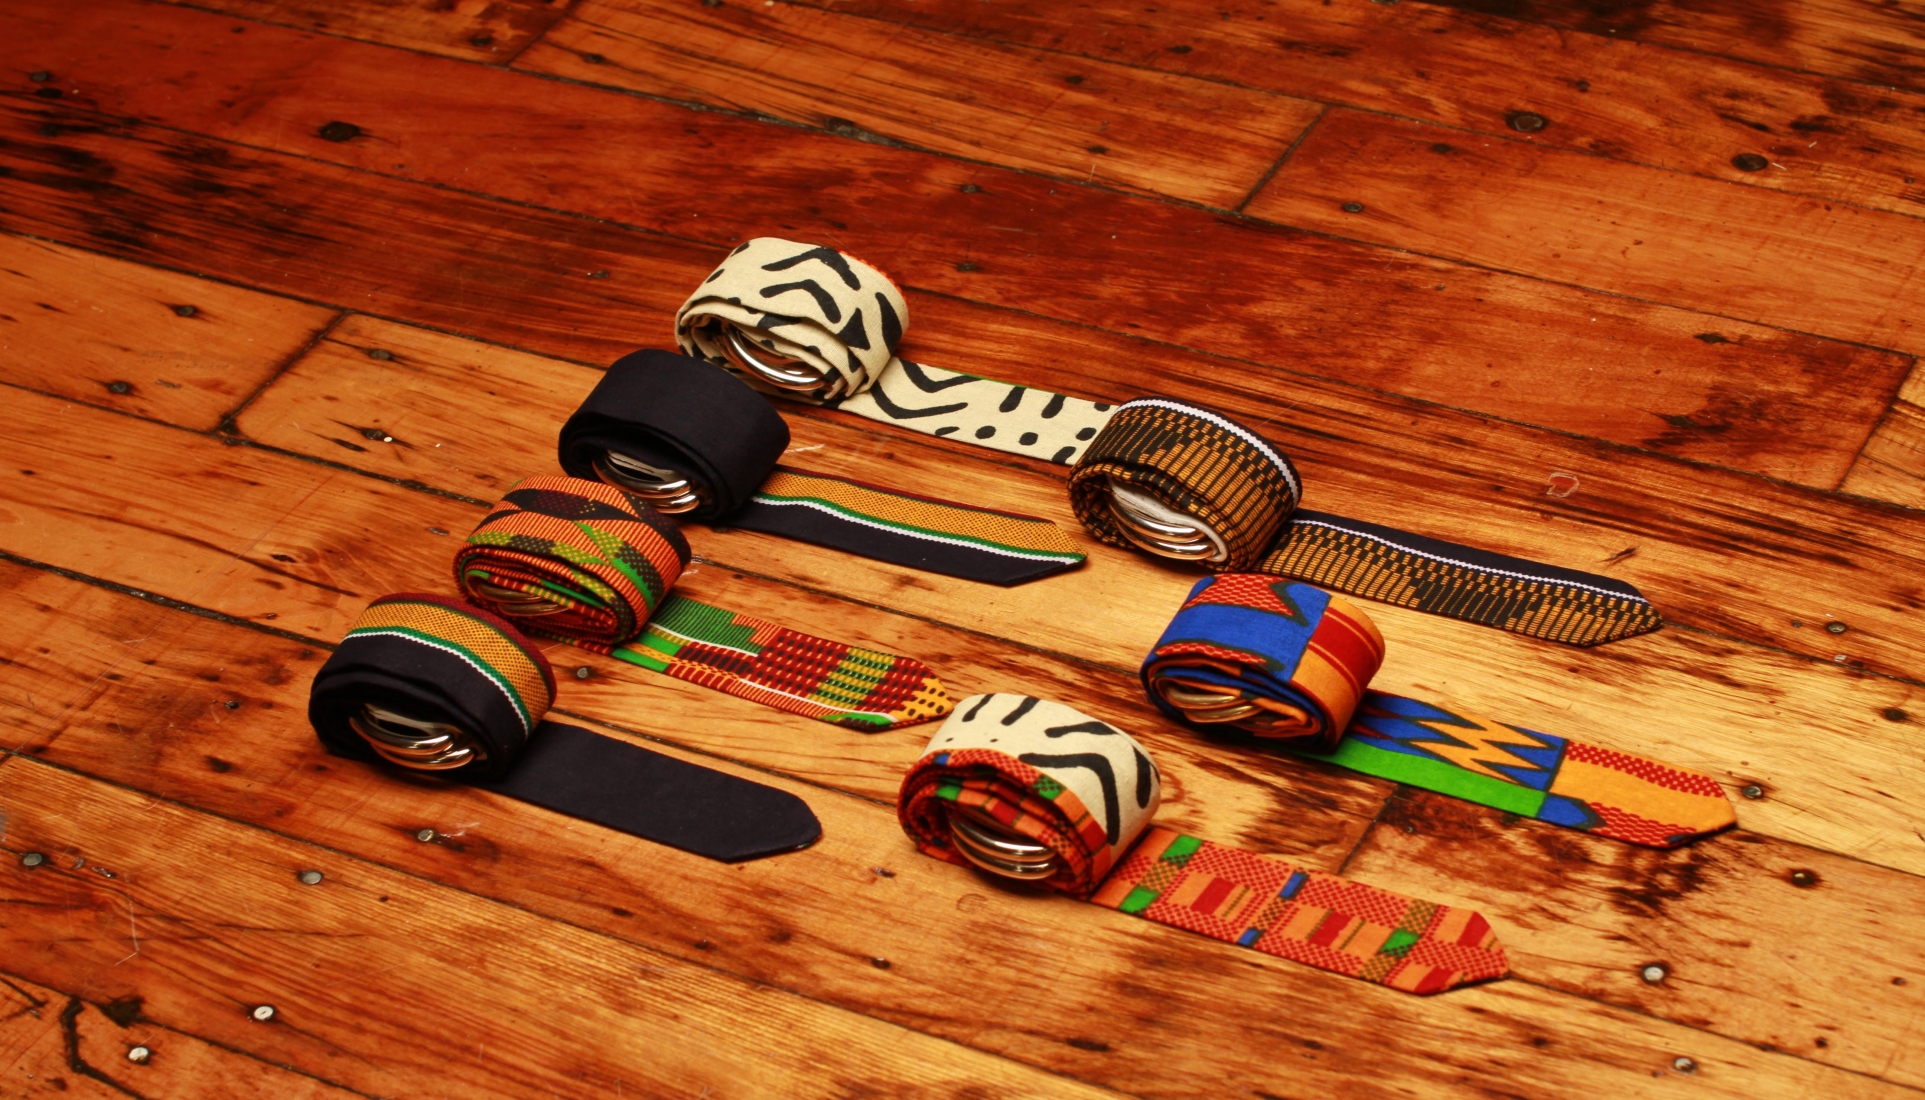 54 Kingdoms Bonoman Belts All Styles Wood Display